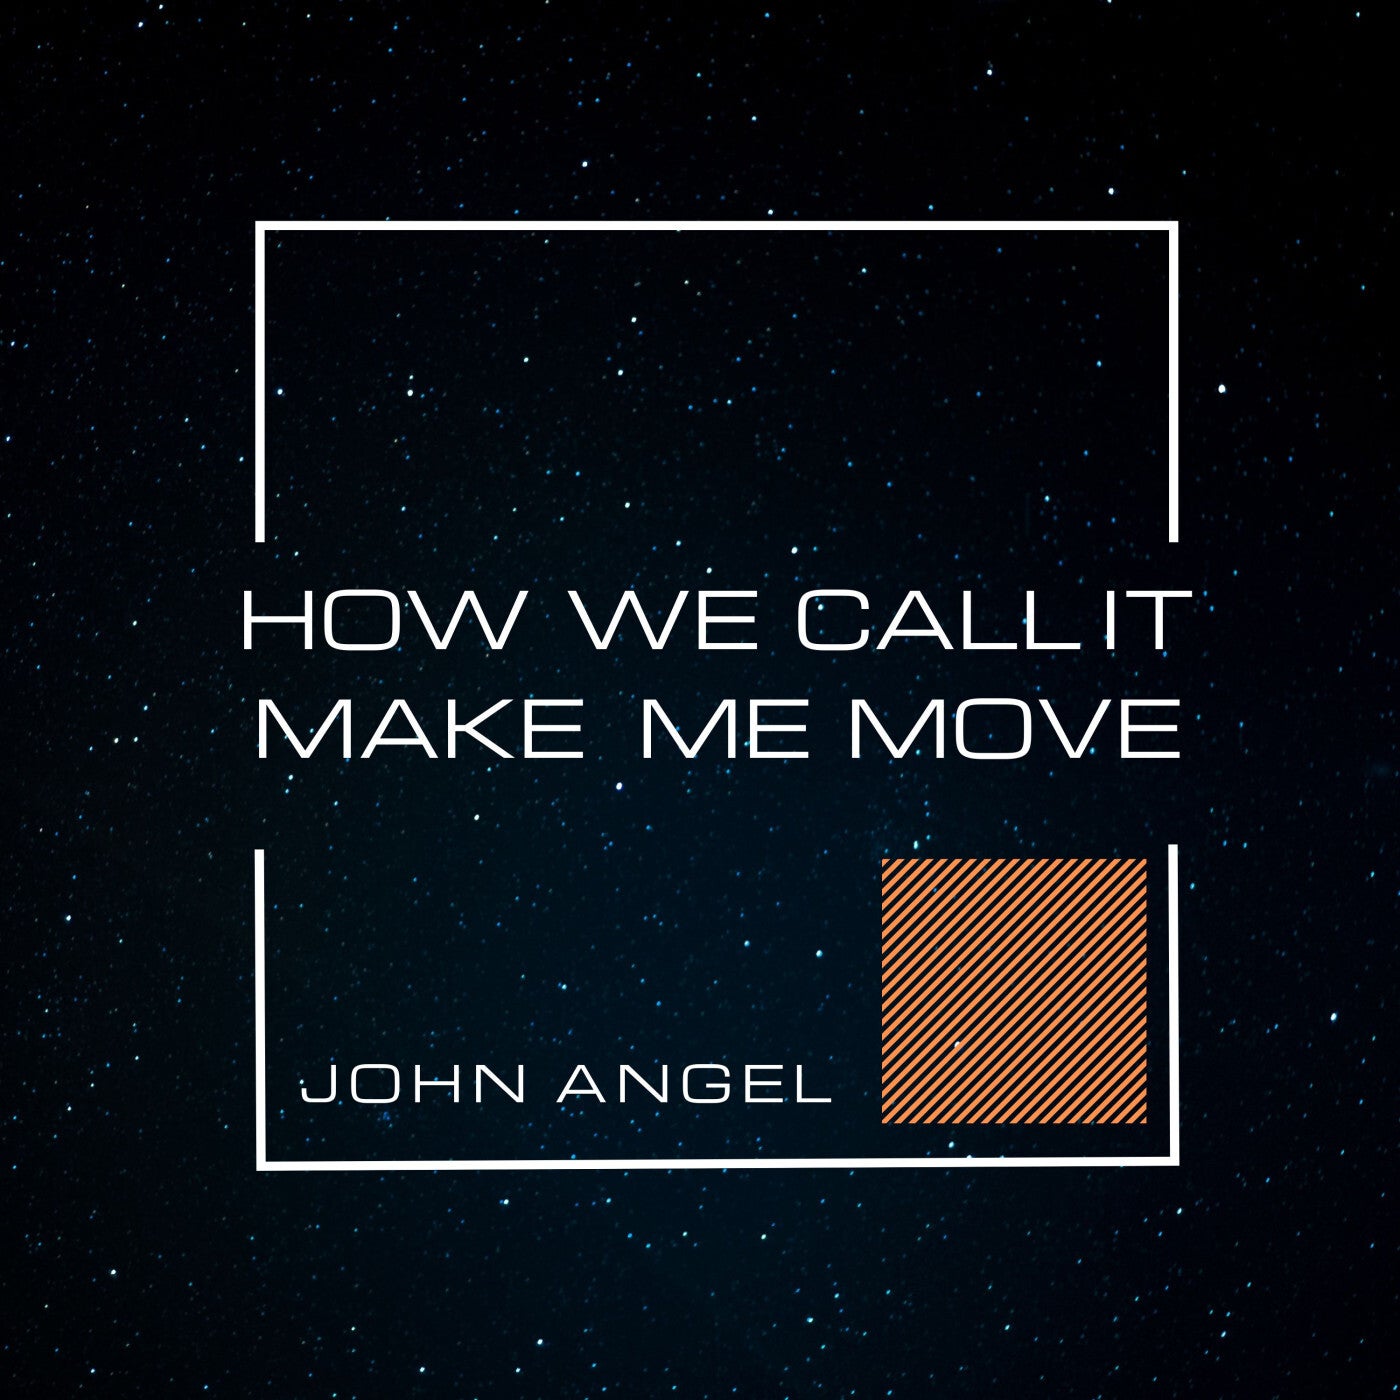 How We Call It-Make Me Move